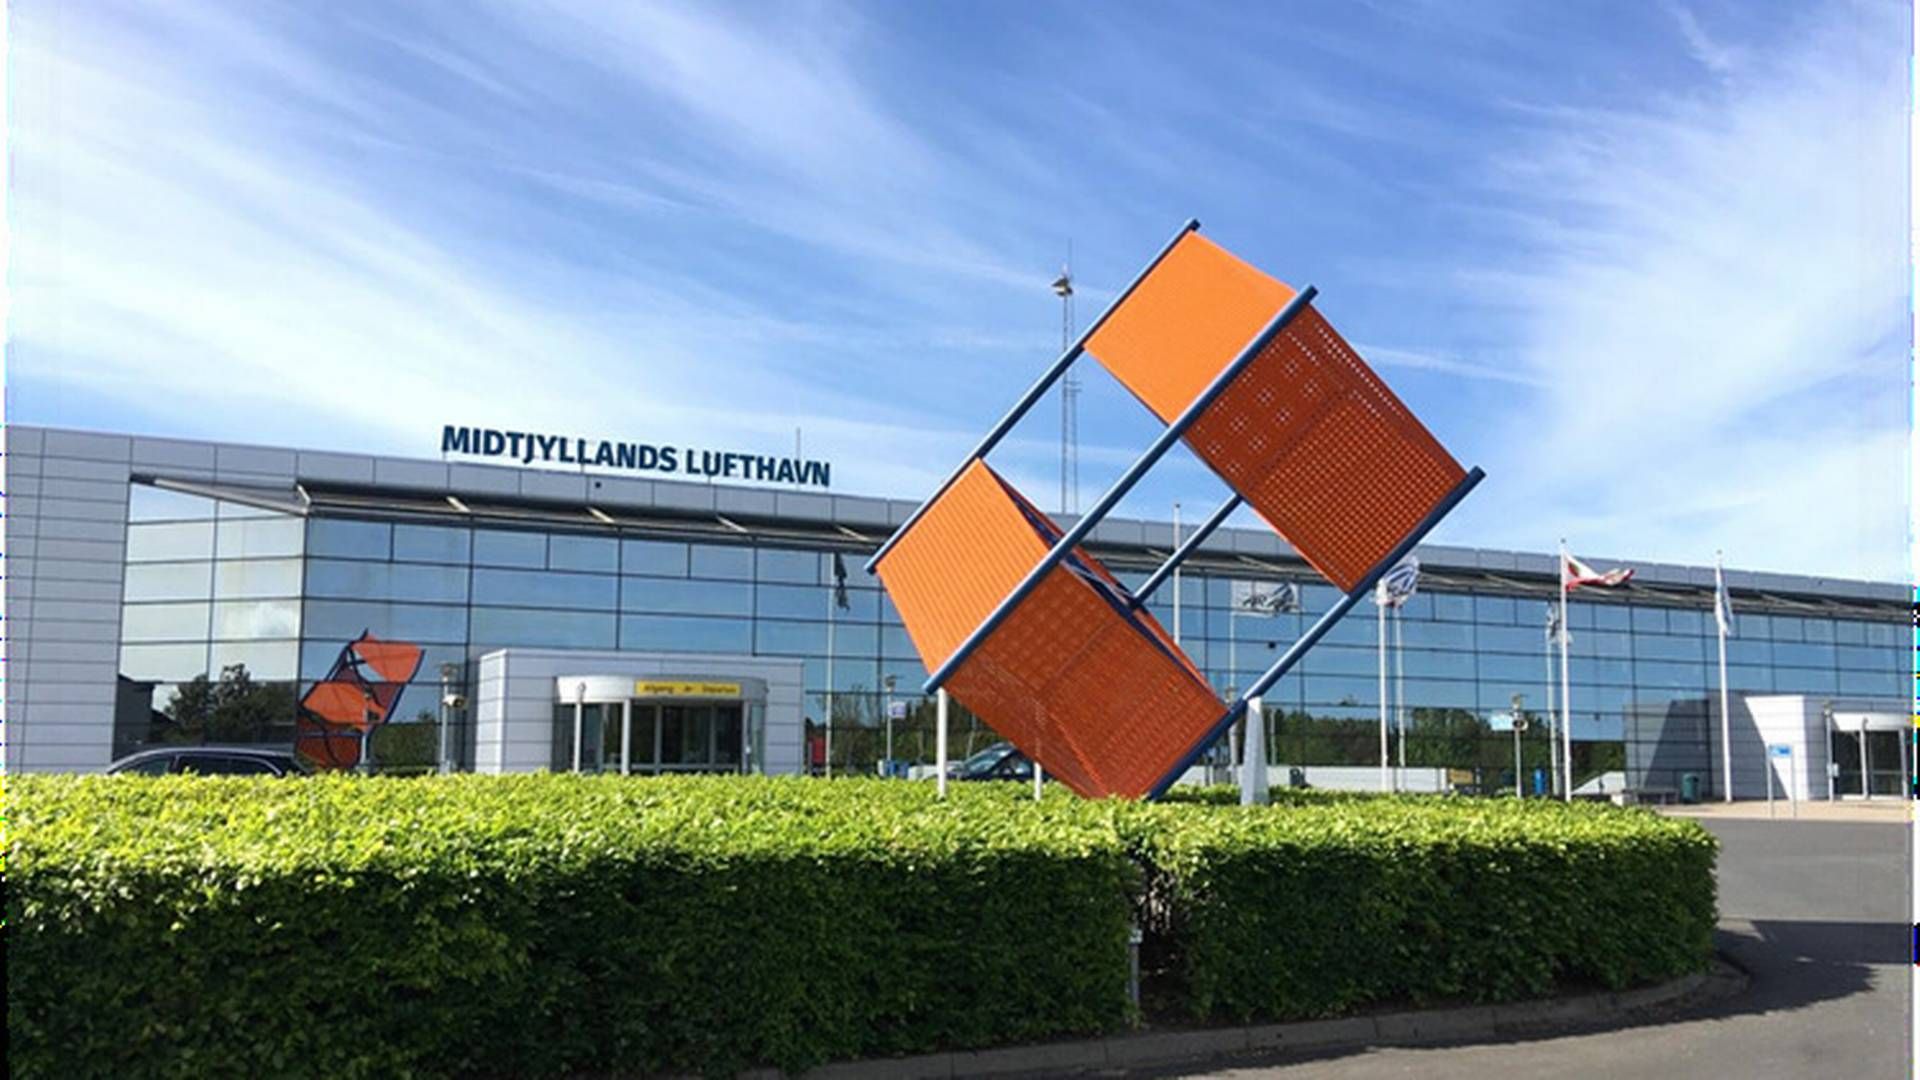 Hvis alt går efter planen, vil Midtjyllands Lufthavns terminalbygning snart have en ny ejer. | Foto: Pr / Midtjyllands Lufthavn